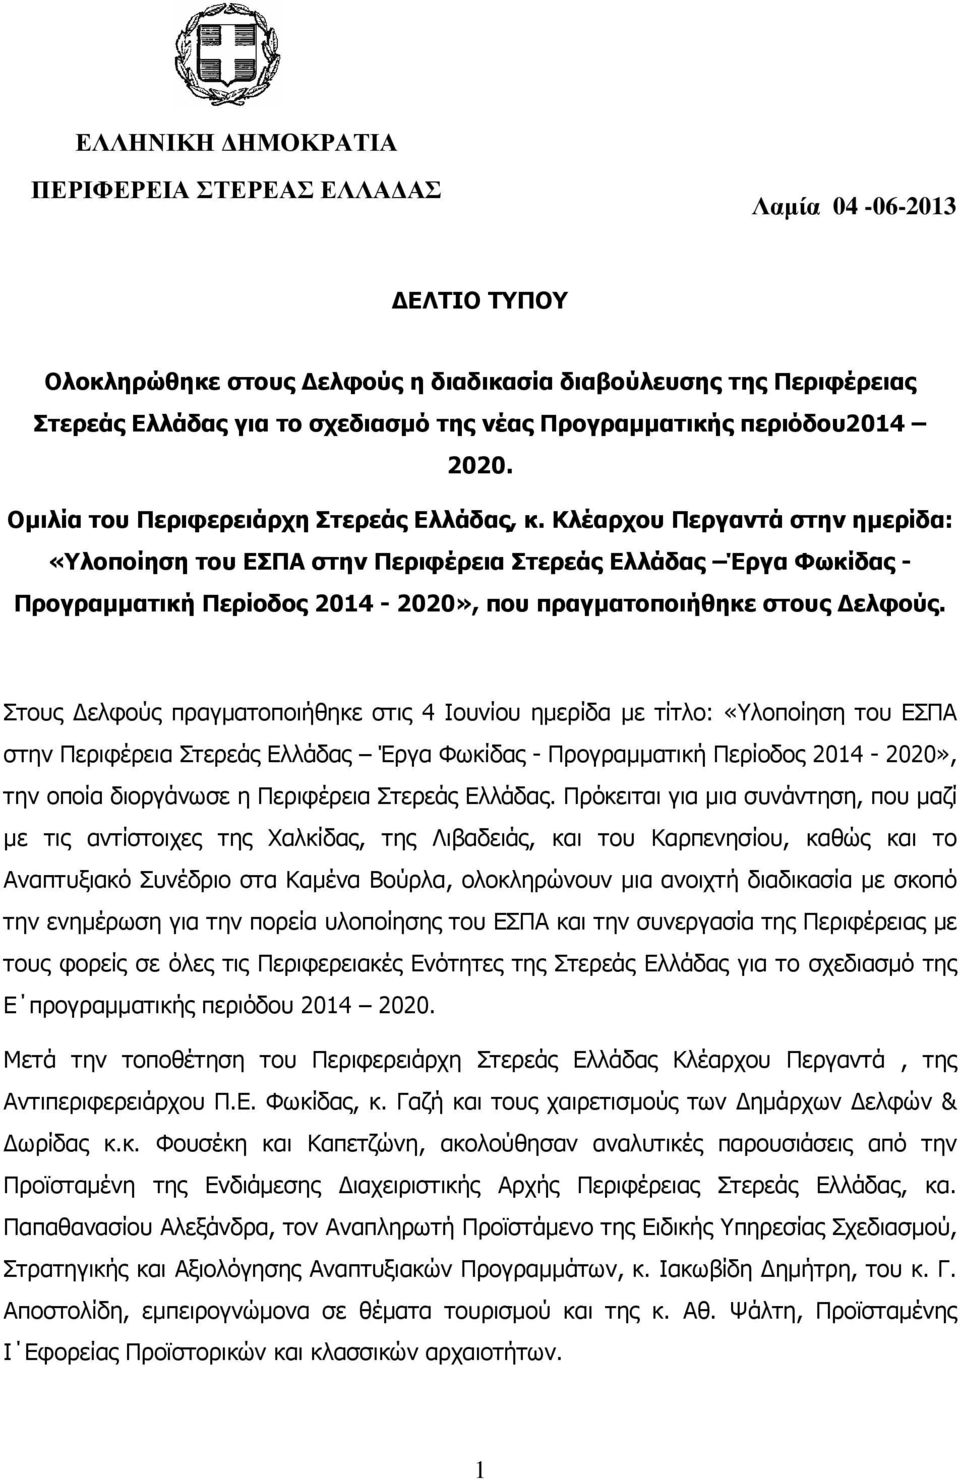 Κλέαρχου Περγαντά στην ηµερίδα: «Υλοποίηση του ΕΣΠΑ στην Περιφέρεια Στερεάς Ελλάδας Έργα Φωκίδας - Προγραµµατική Περίοδος 2014-2020», που πραγµατοποιήθηκε στους ελφούς.